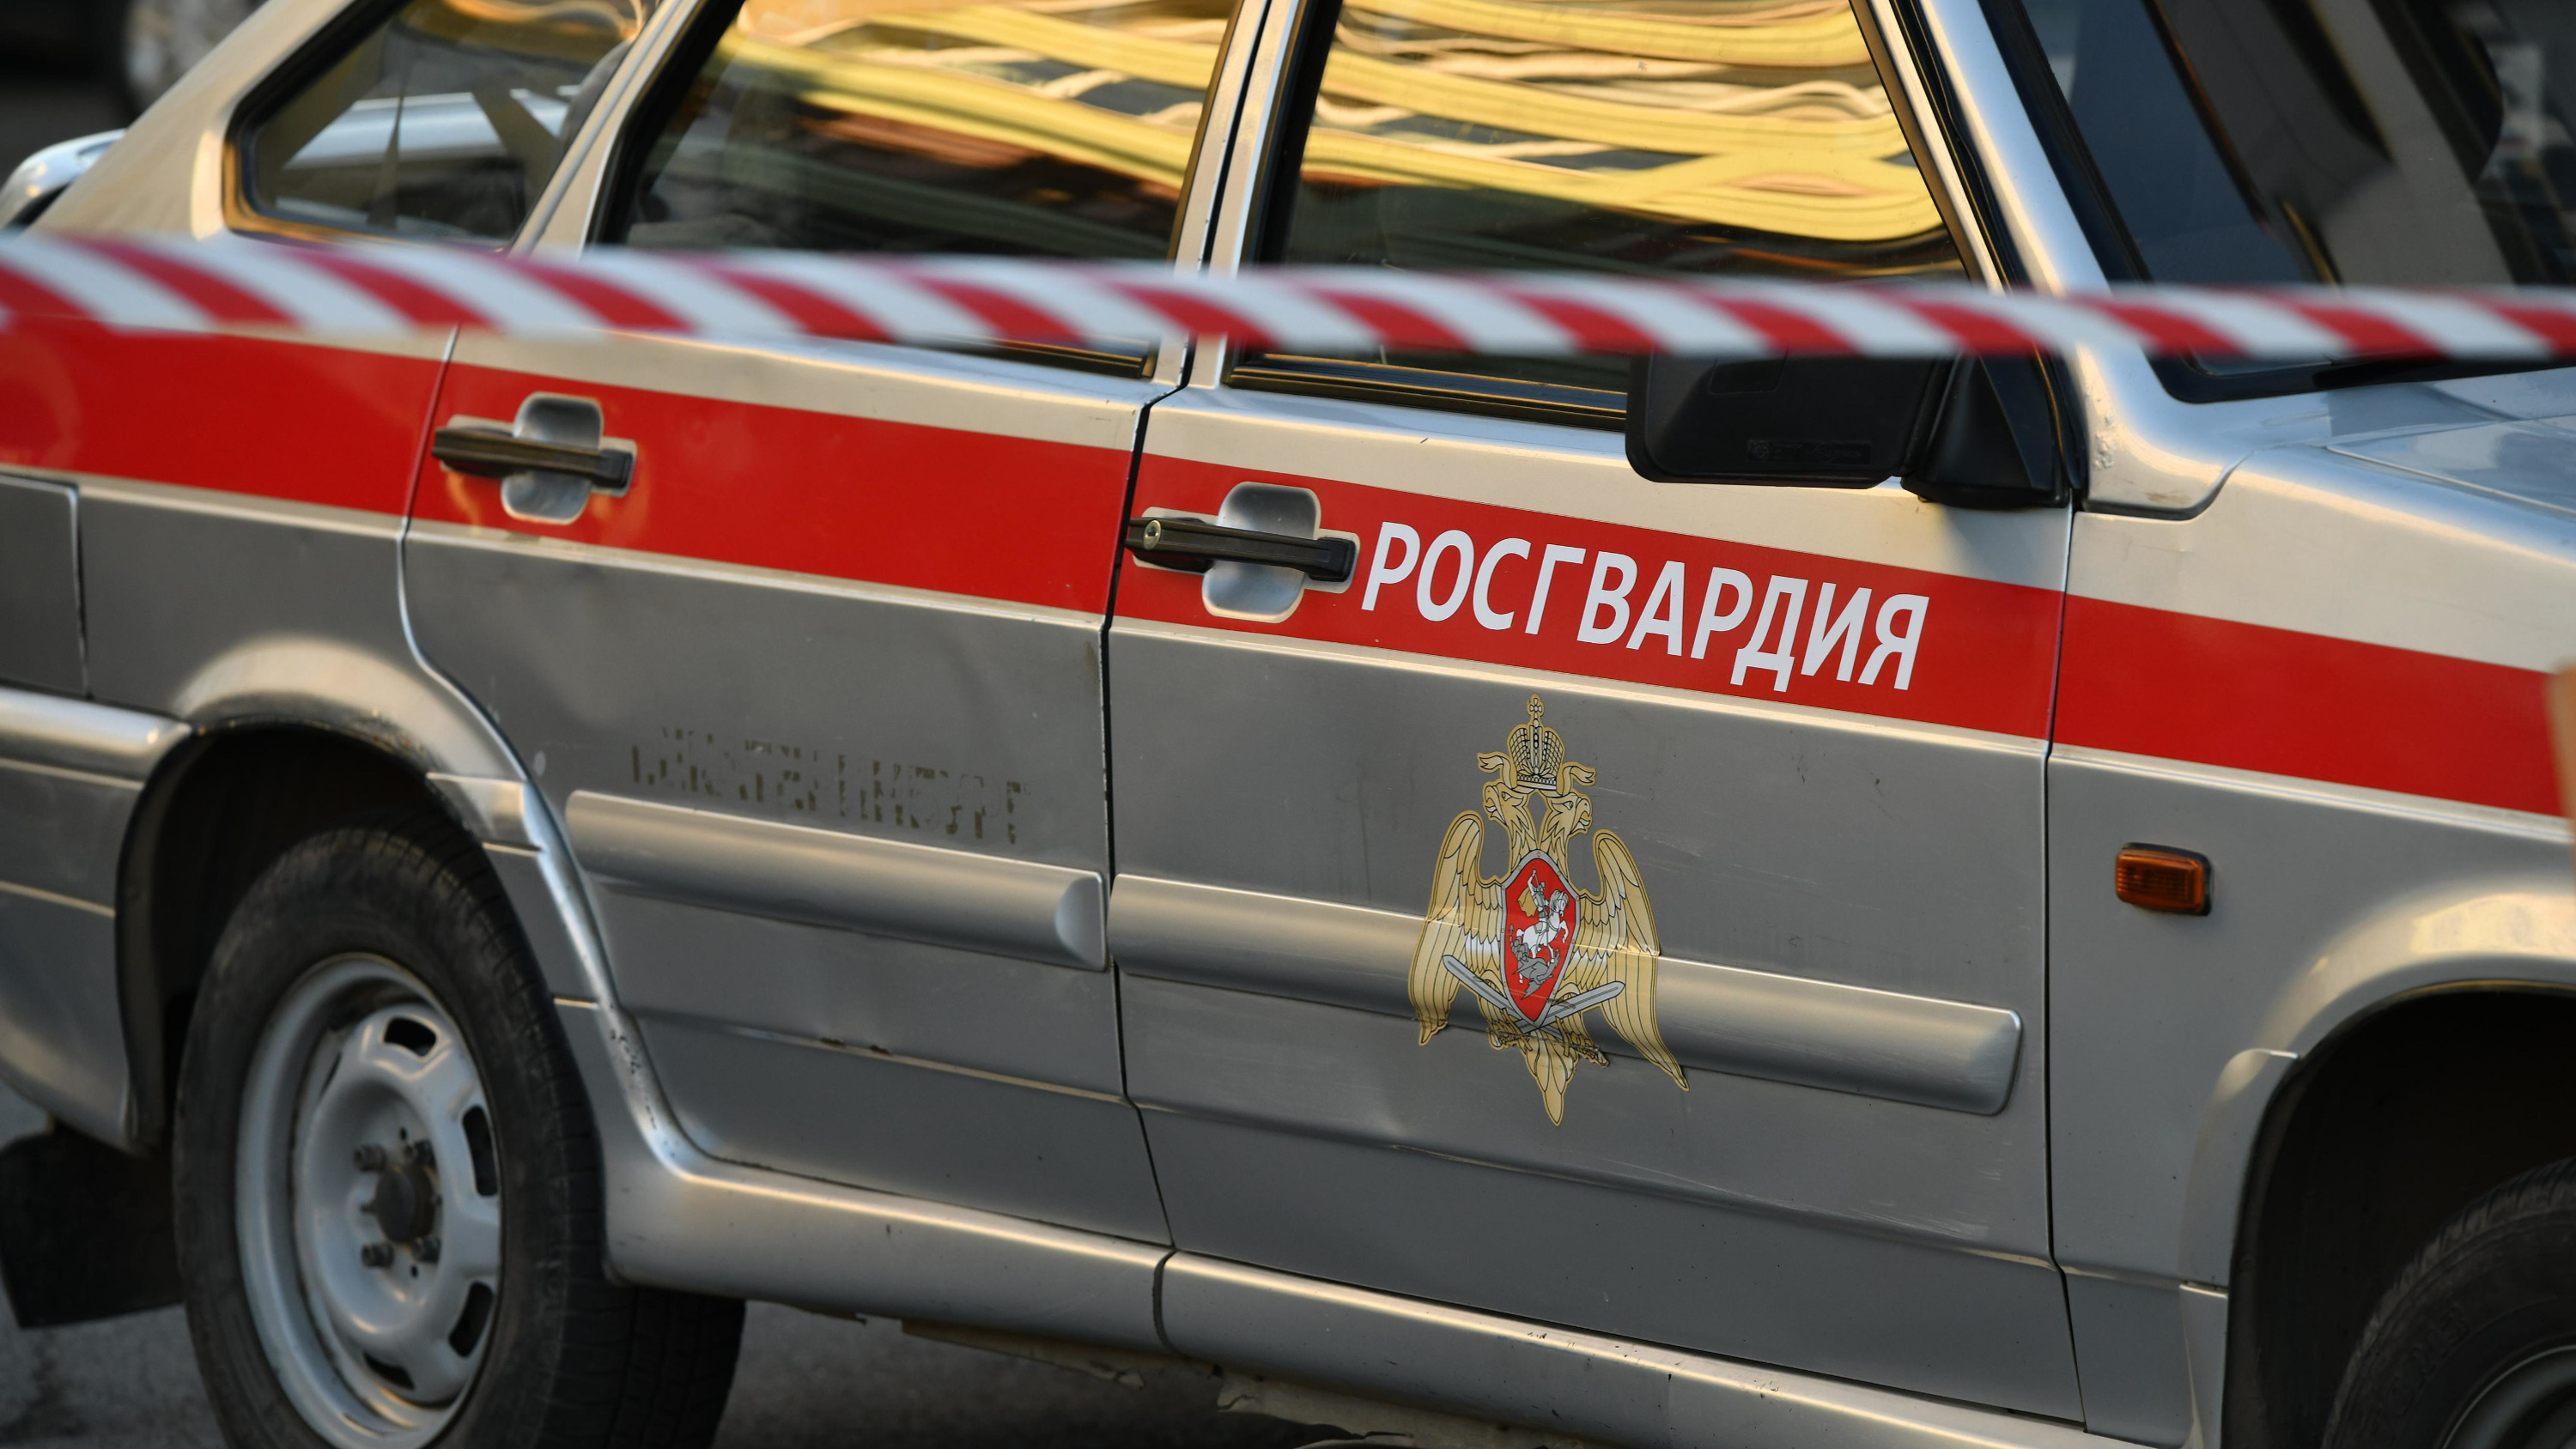 Сбил насмерть девочку и скрылся: в Кузбассе по подозрению в преступлении арестовали бойца Росгвардии